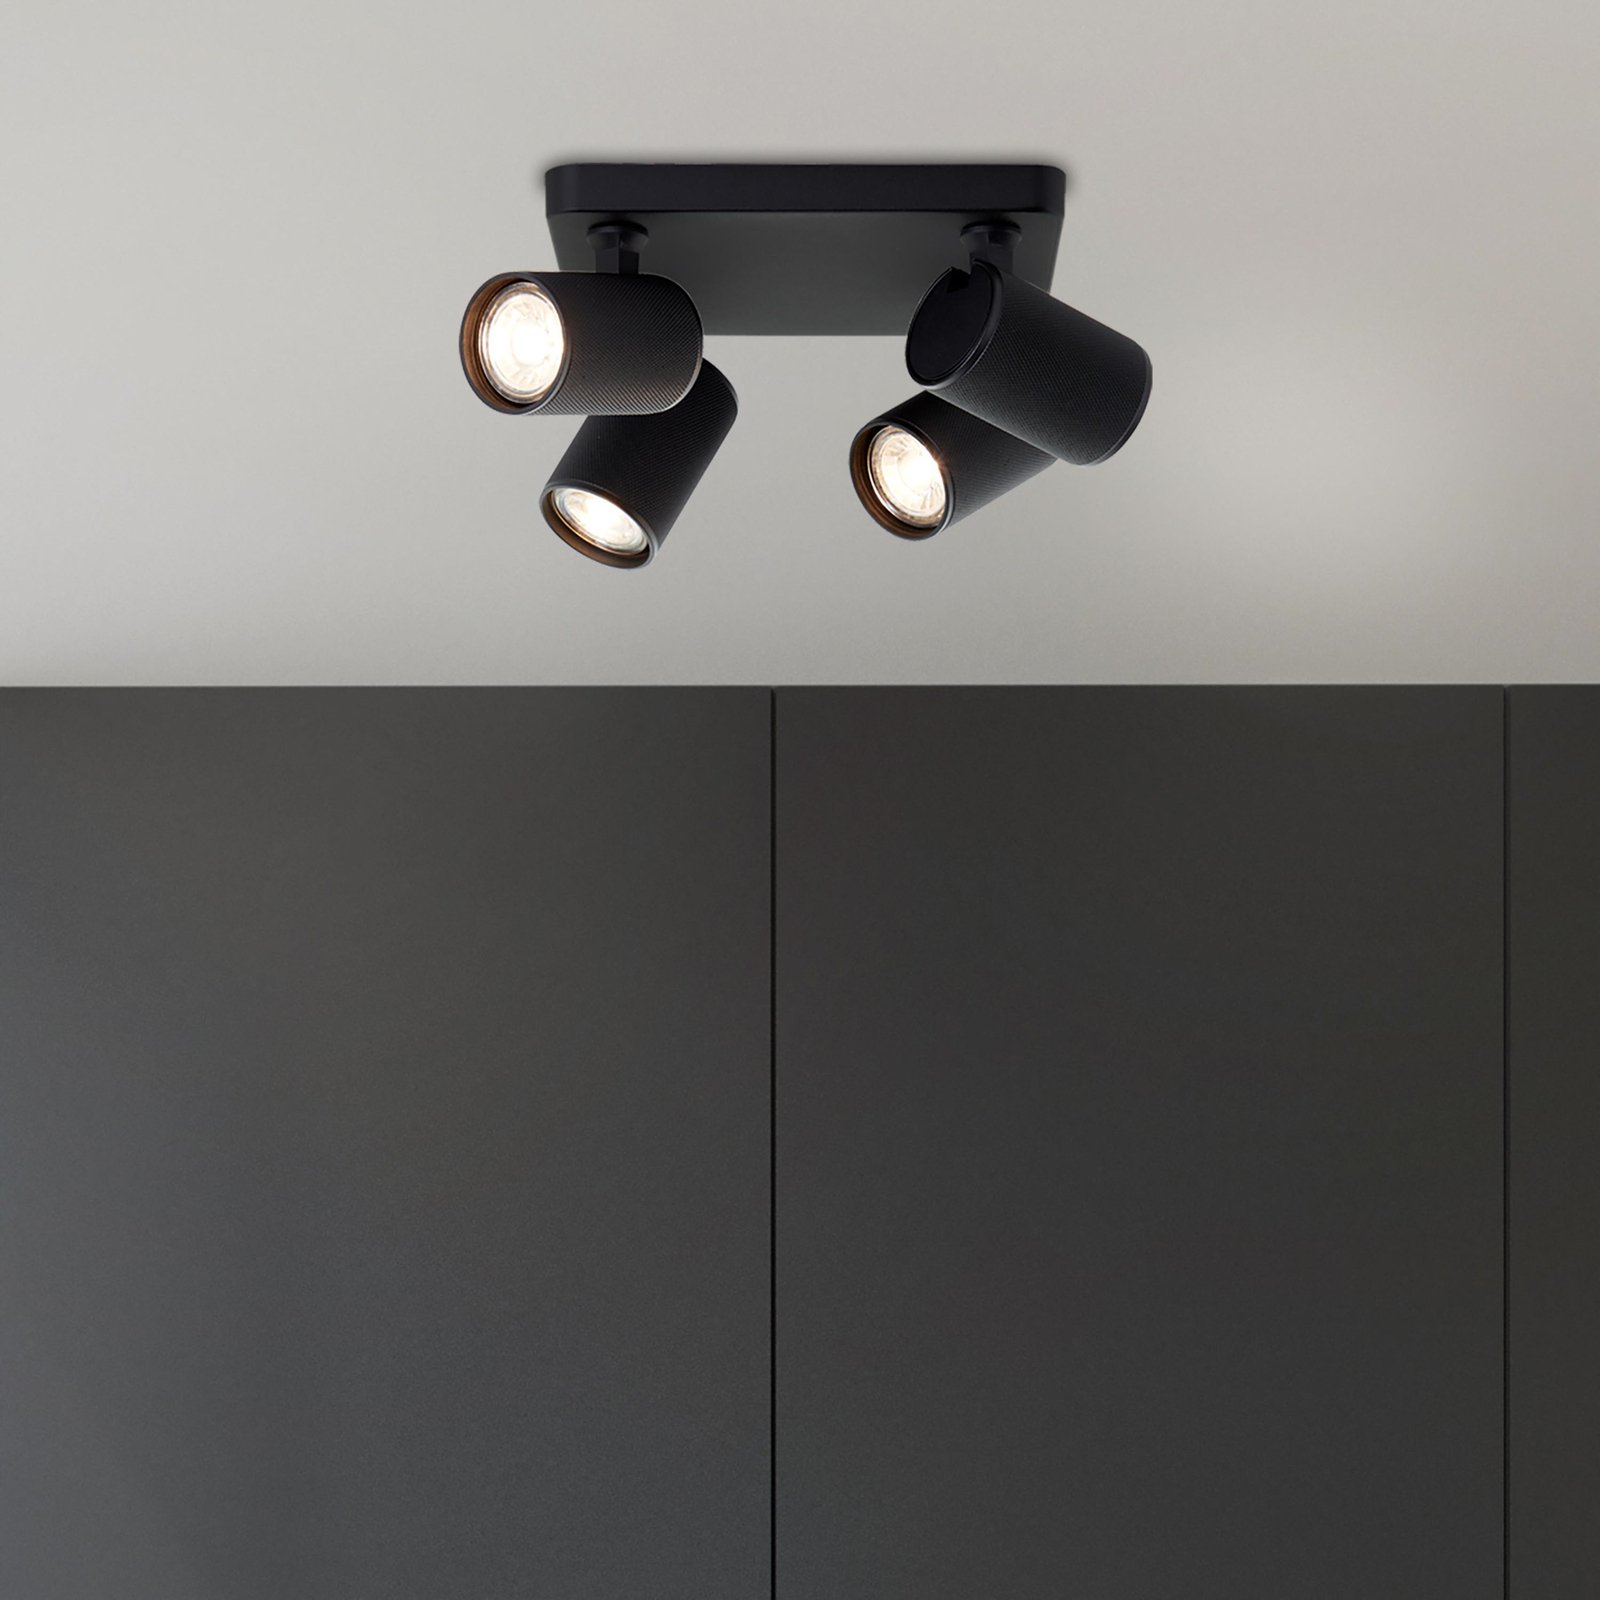 LED stropné bodové svietidlo Marty, dĺžka 22 cm, pieskovo čierne, 4 svetlá.